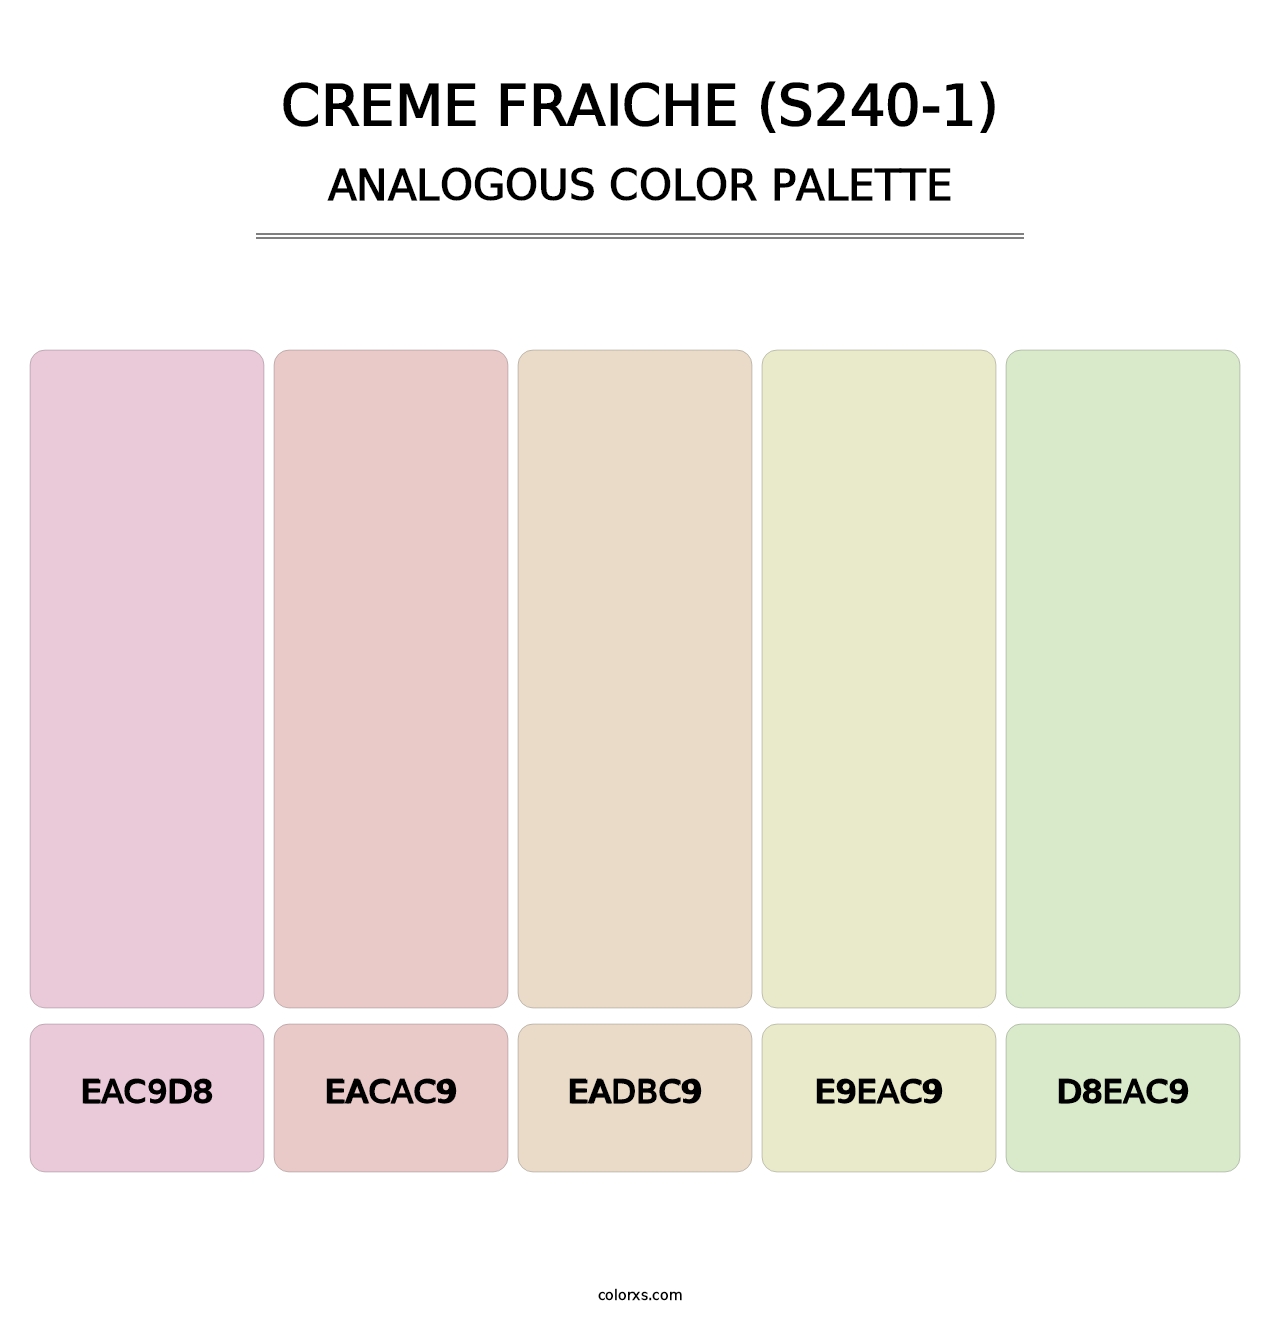 Creme Fraiche (S240-1) - Analogous Color Palette